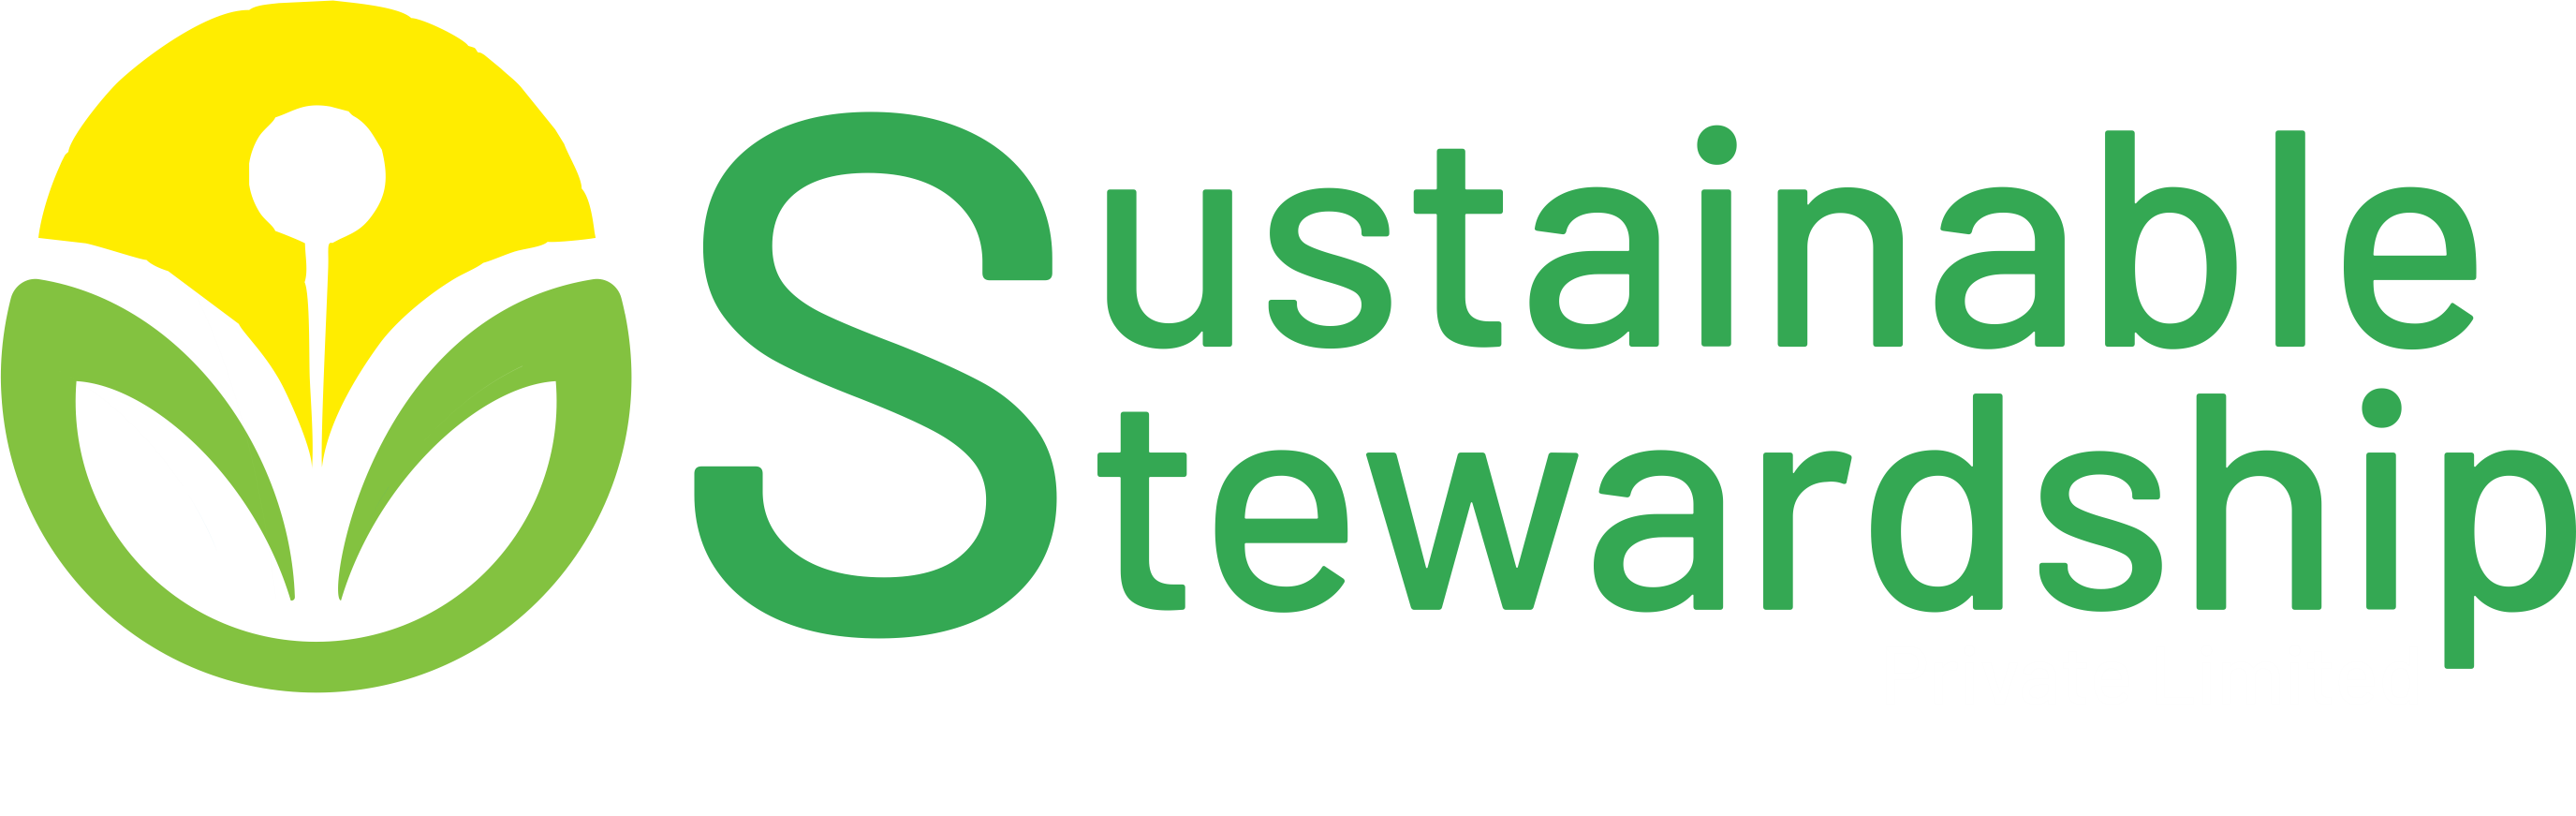 Sustainable Stewardship